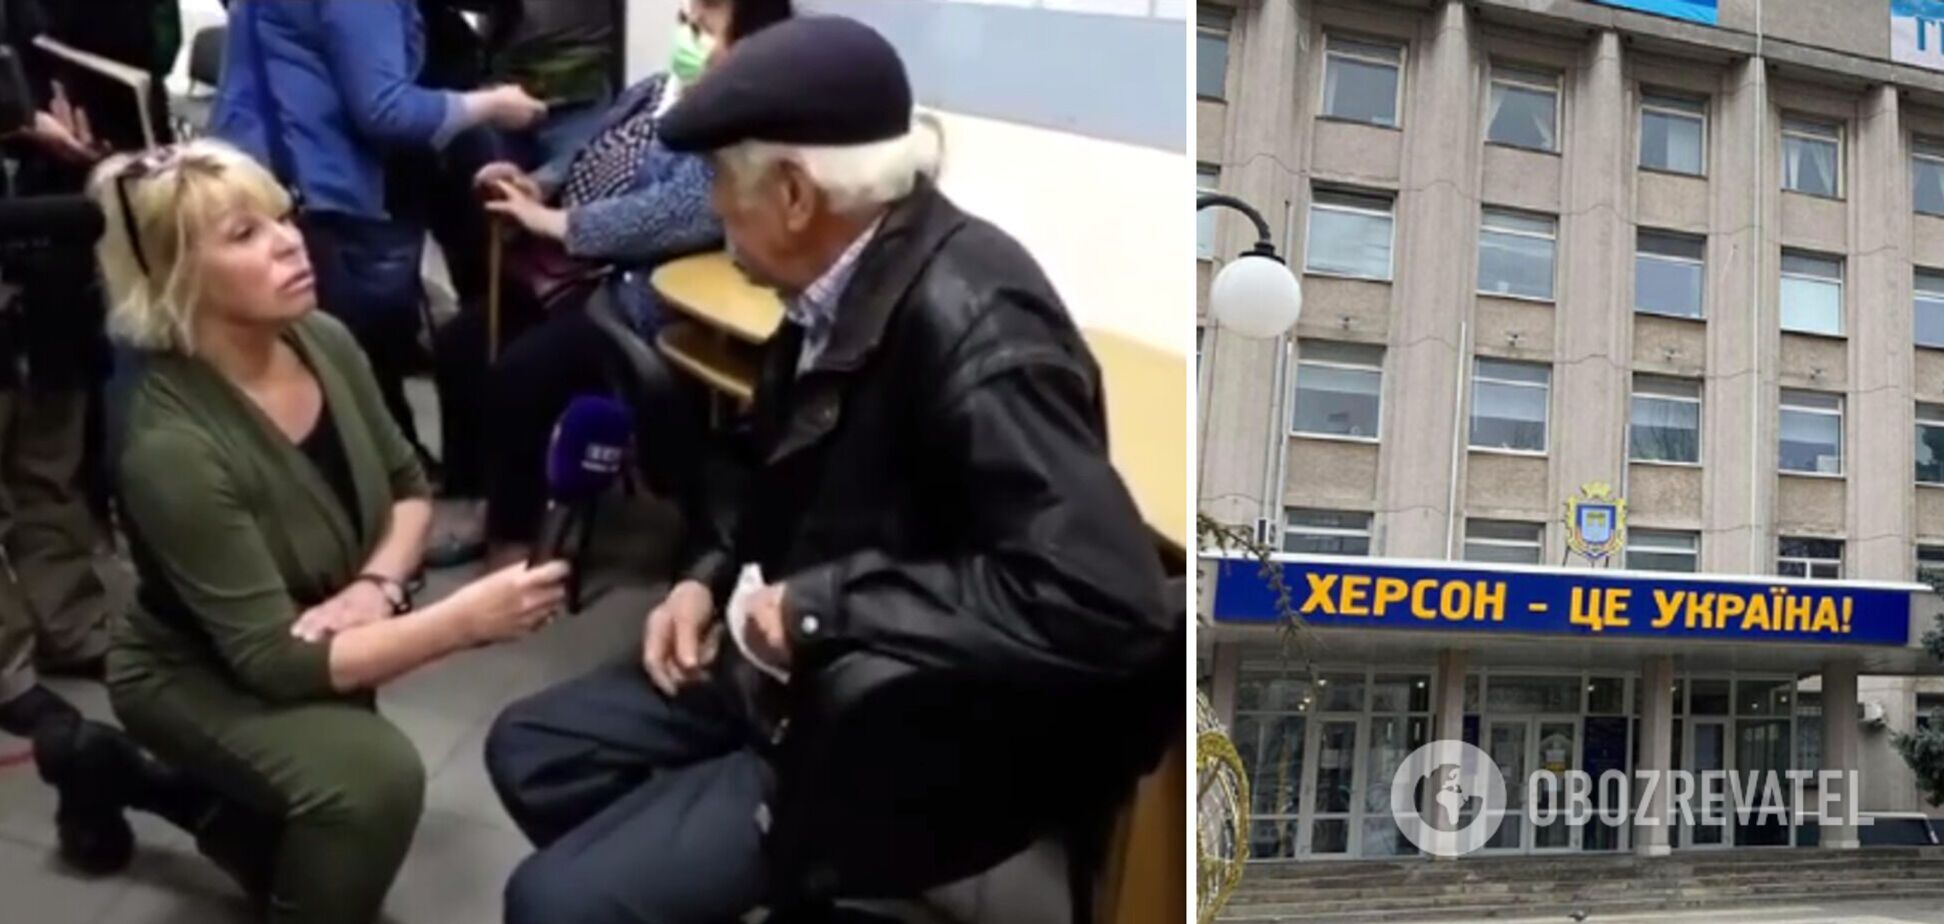 'Хочу жить в Украине!' Пенсионер из Херсона испортил 'картинку' пропагандистов правдой. Видео